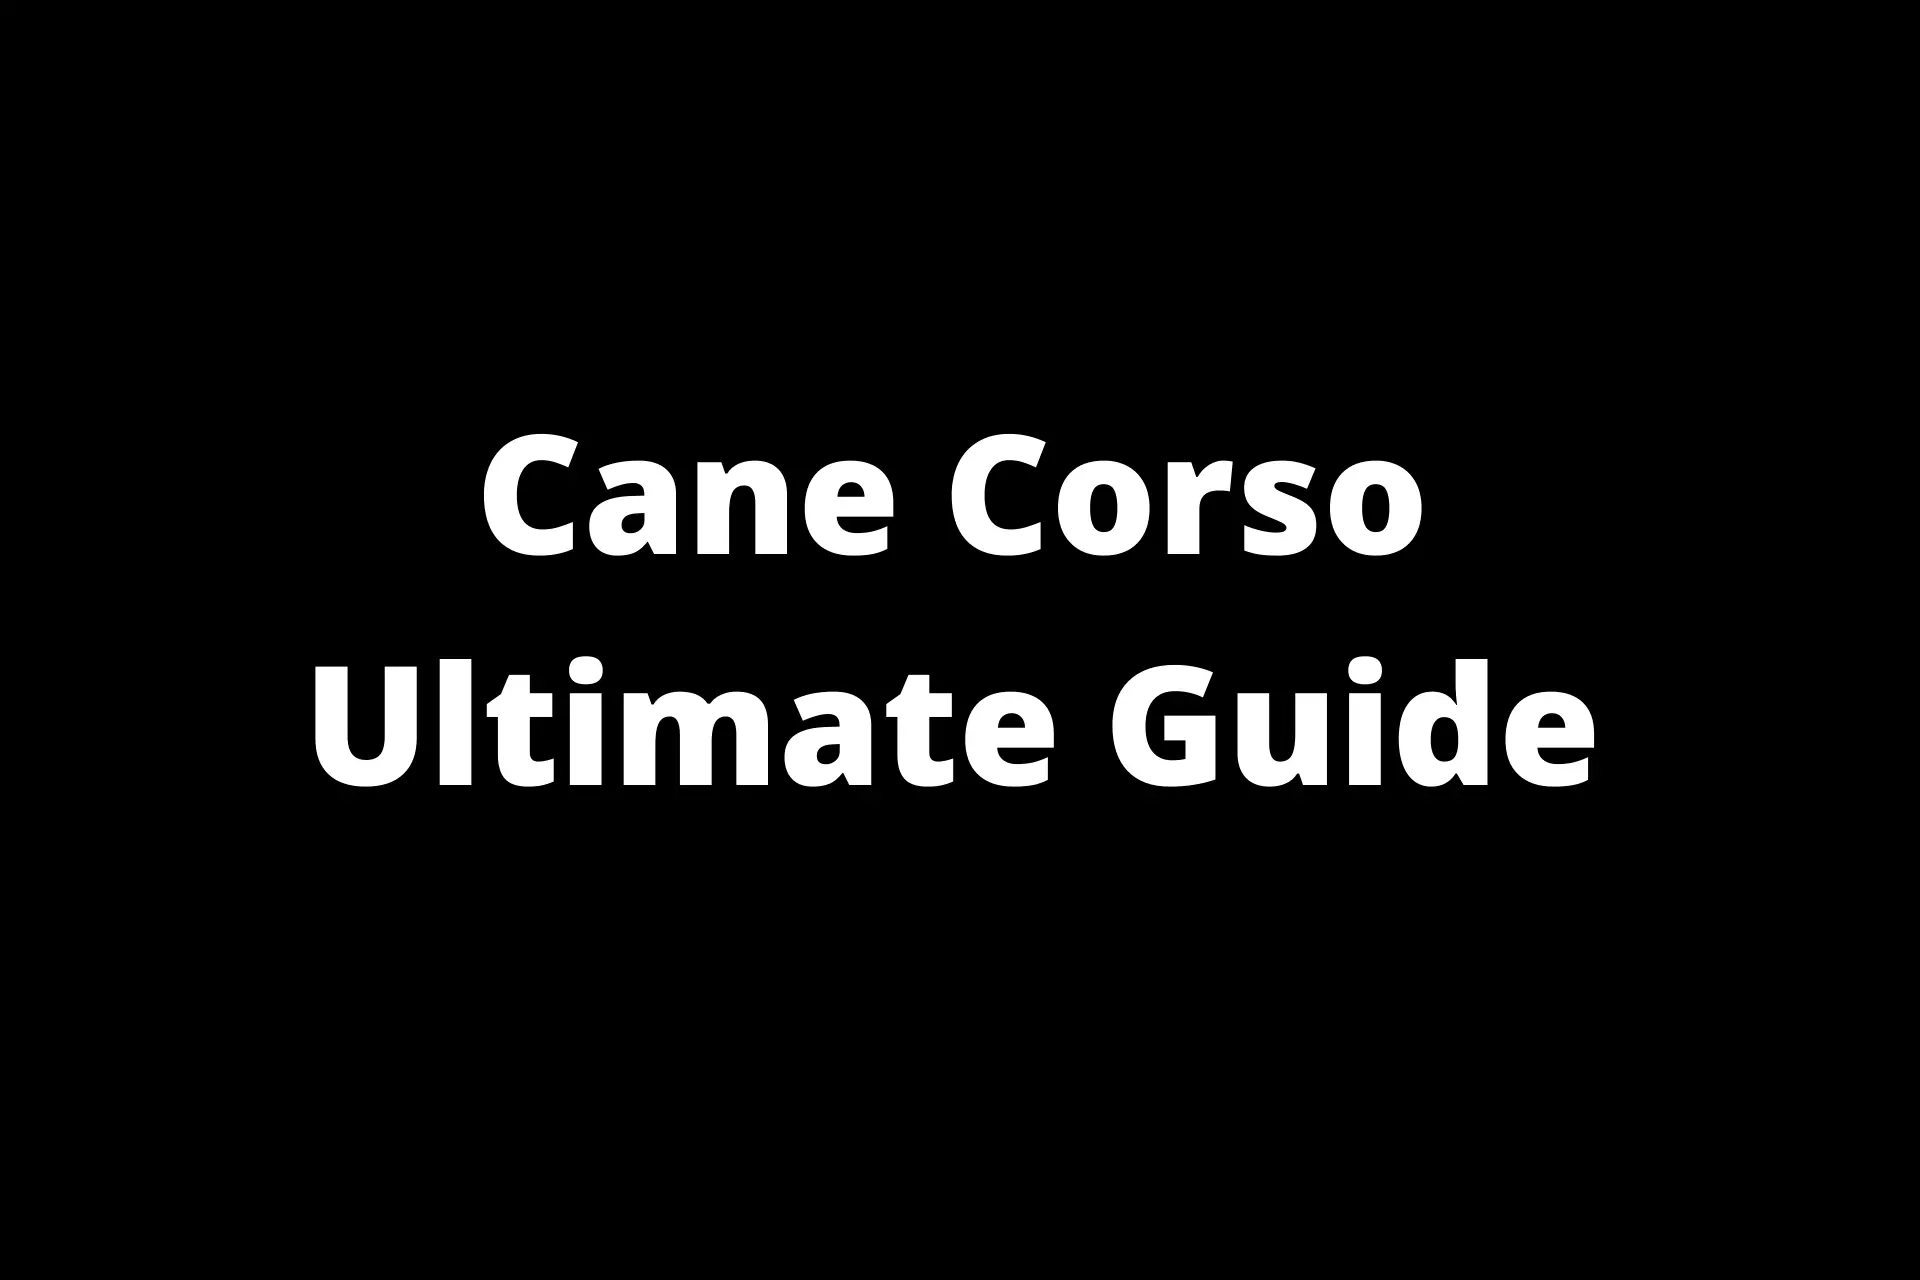 Cane Corso Ultimate Guide